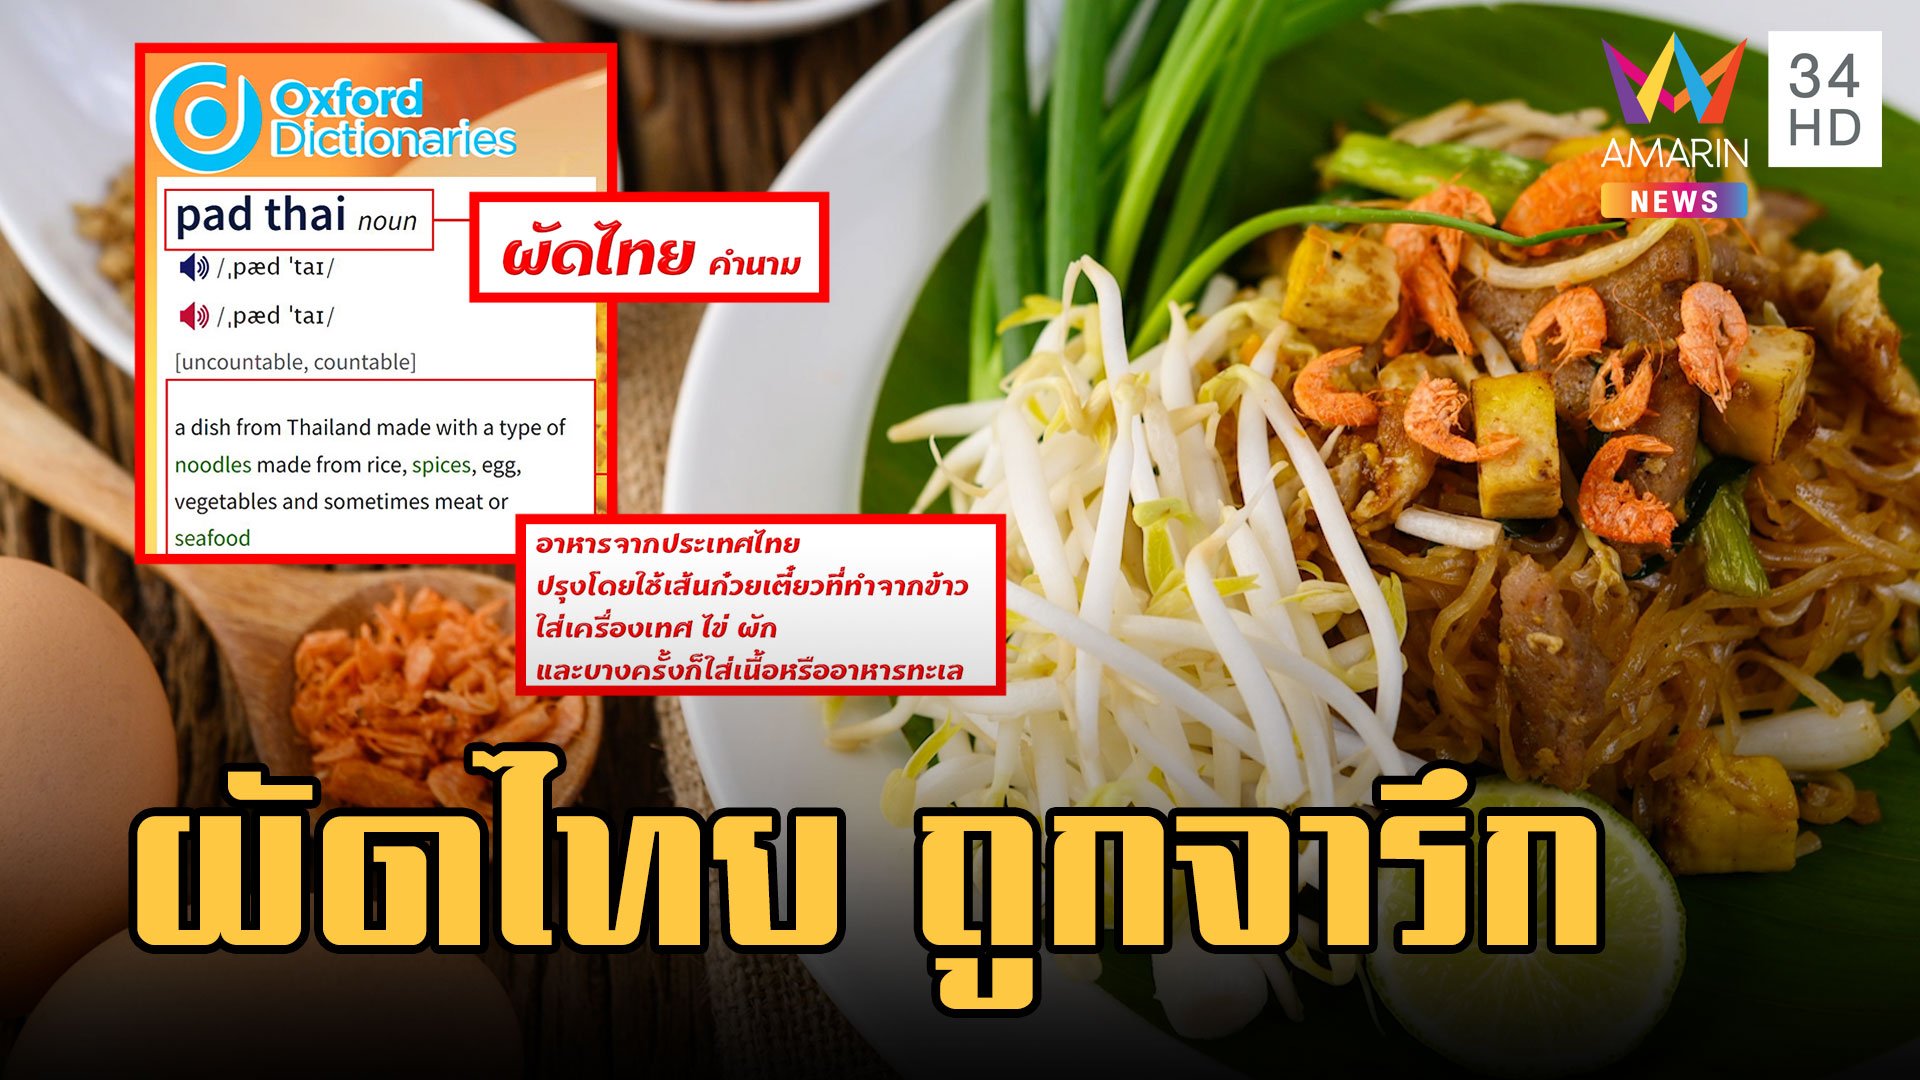 ผัดไทย เมนูอาหารไทยถูกบรรจุลง Oxford Dictionnaries | ข่าวอรุณอมรินทร์ | 11 มี.ค. 66 | AMARIN TVHD34